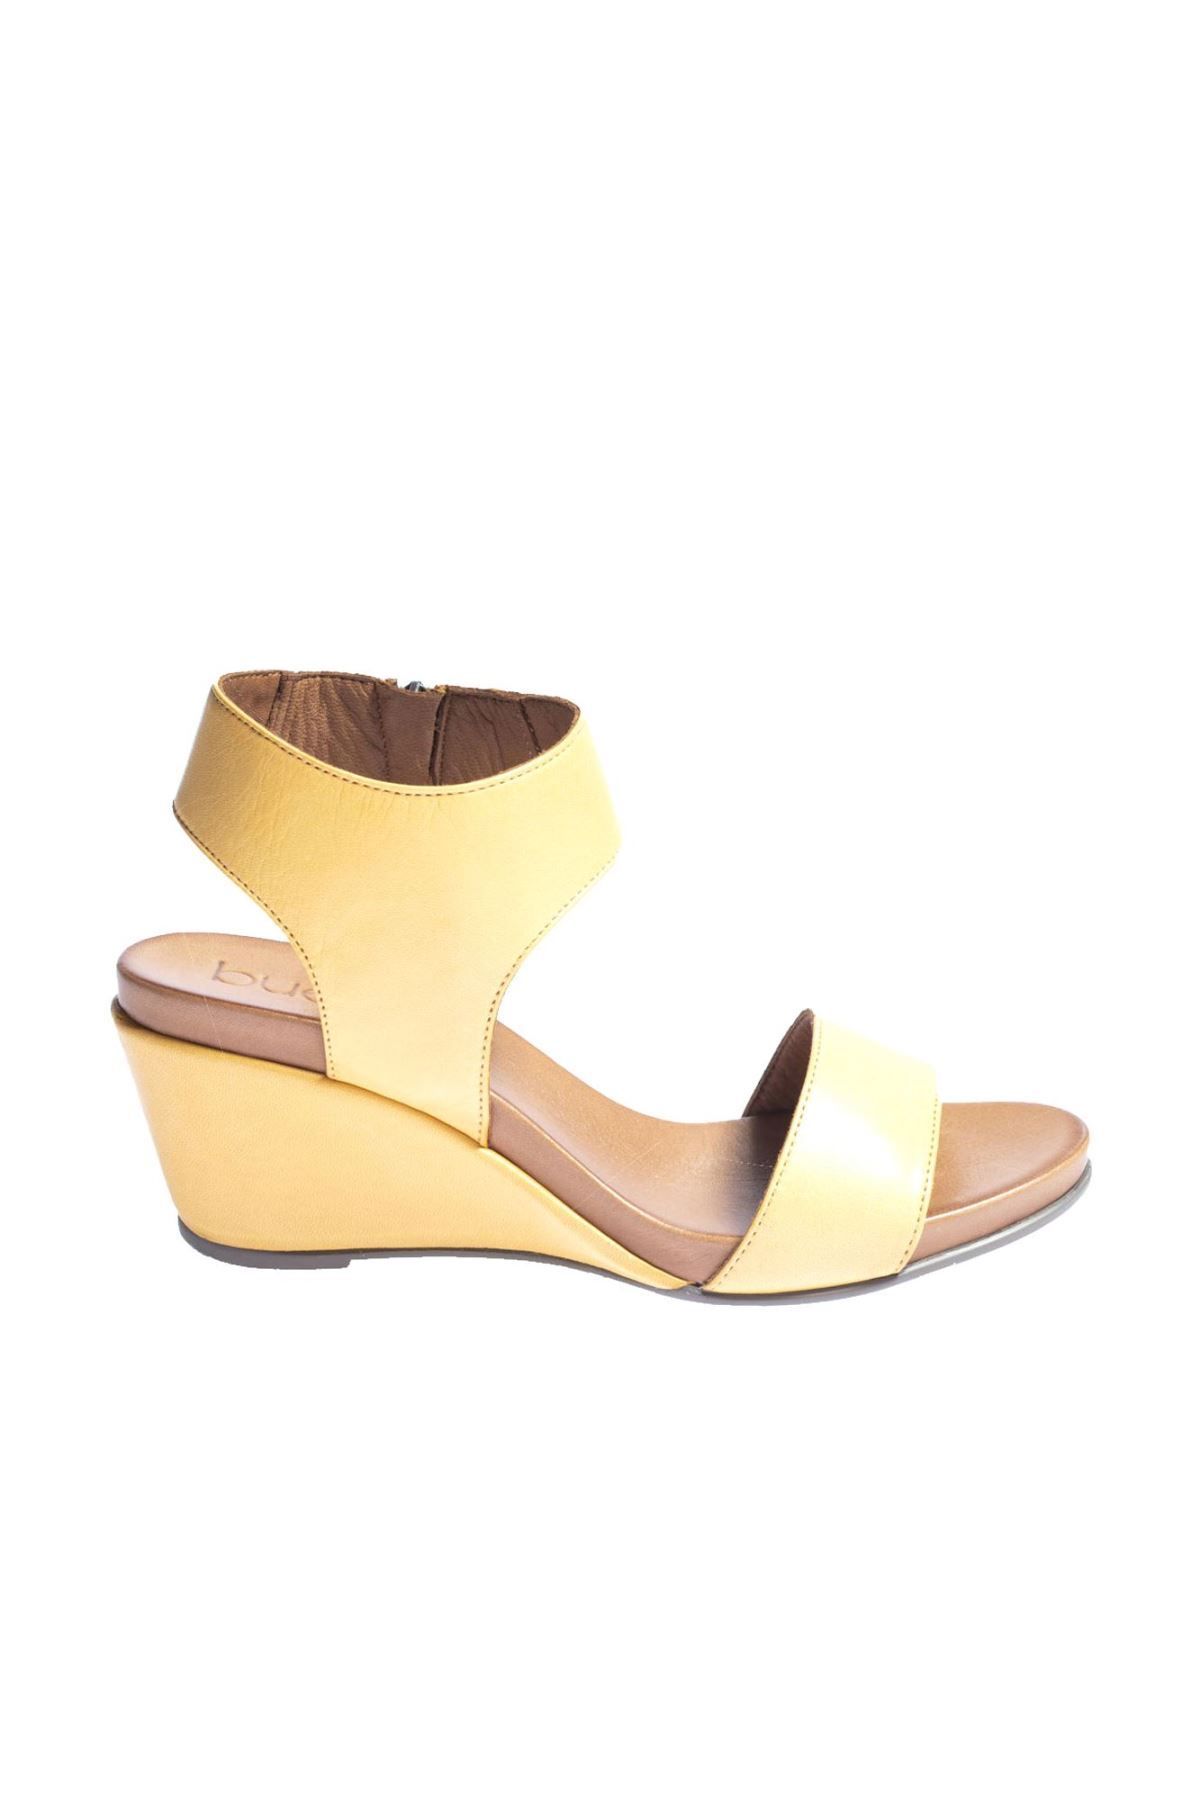 BUENO Shoes Sarı Deri Kadın Dolgu Topuklu Sandalet